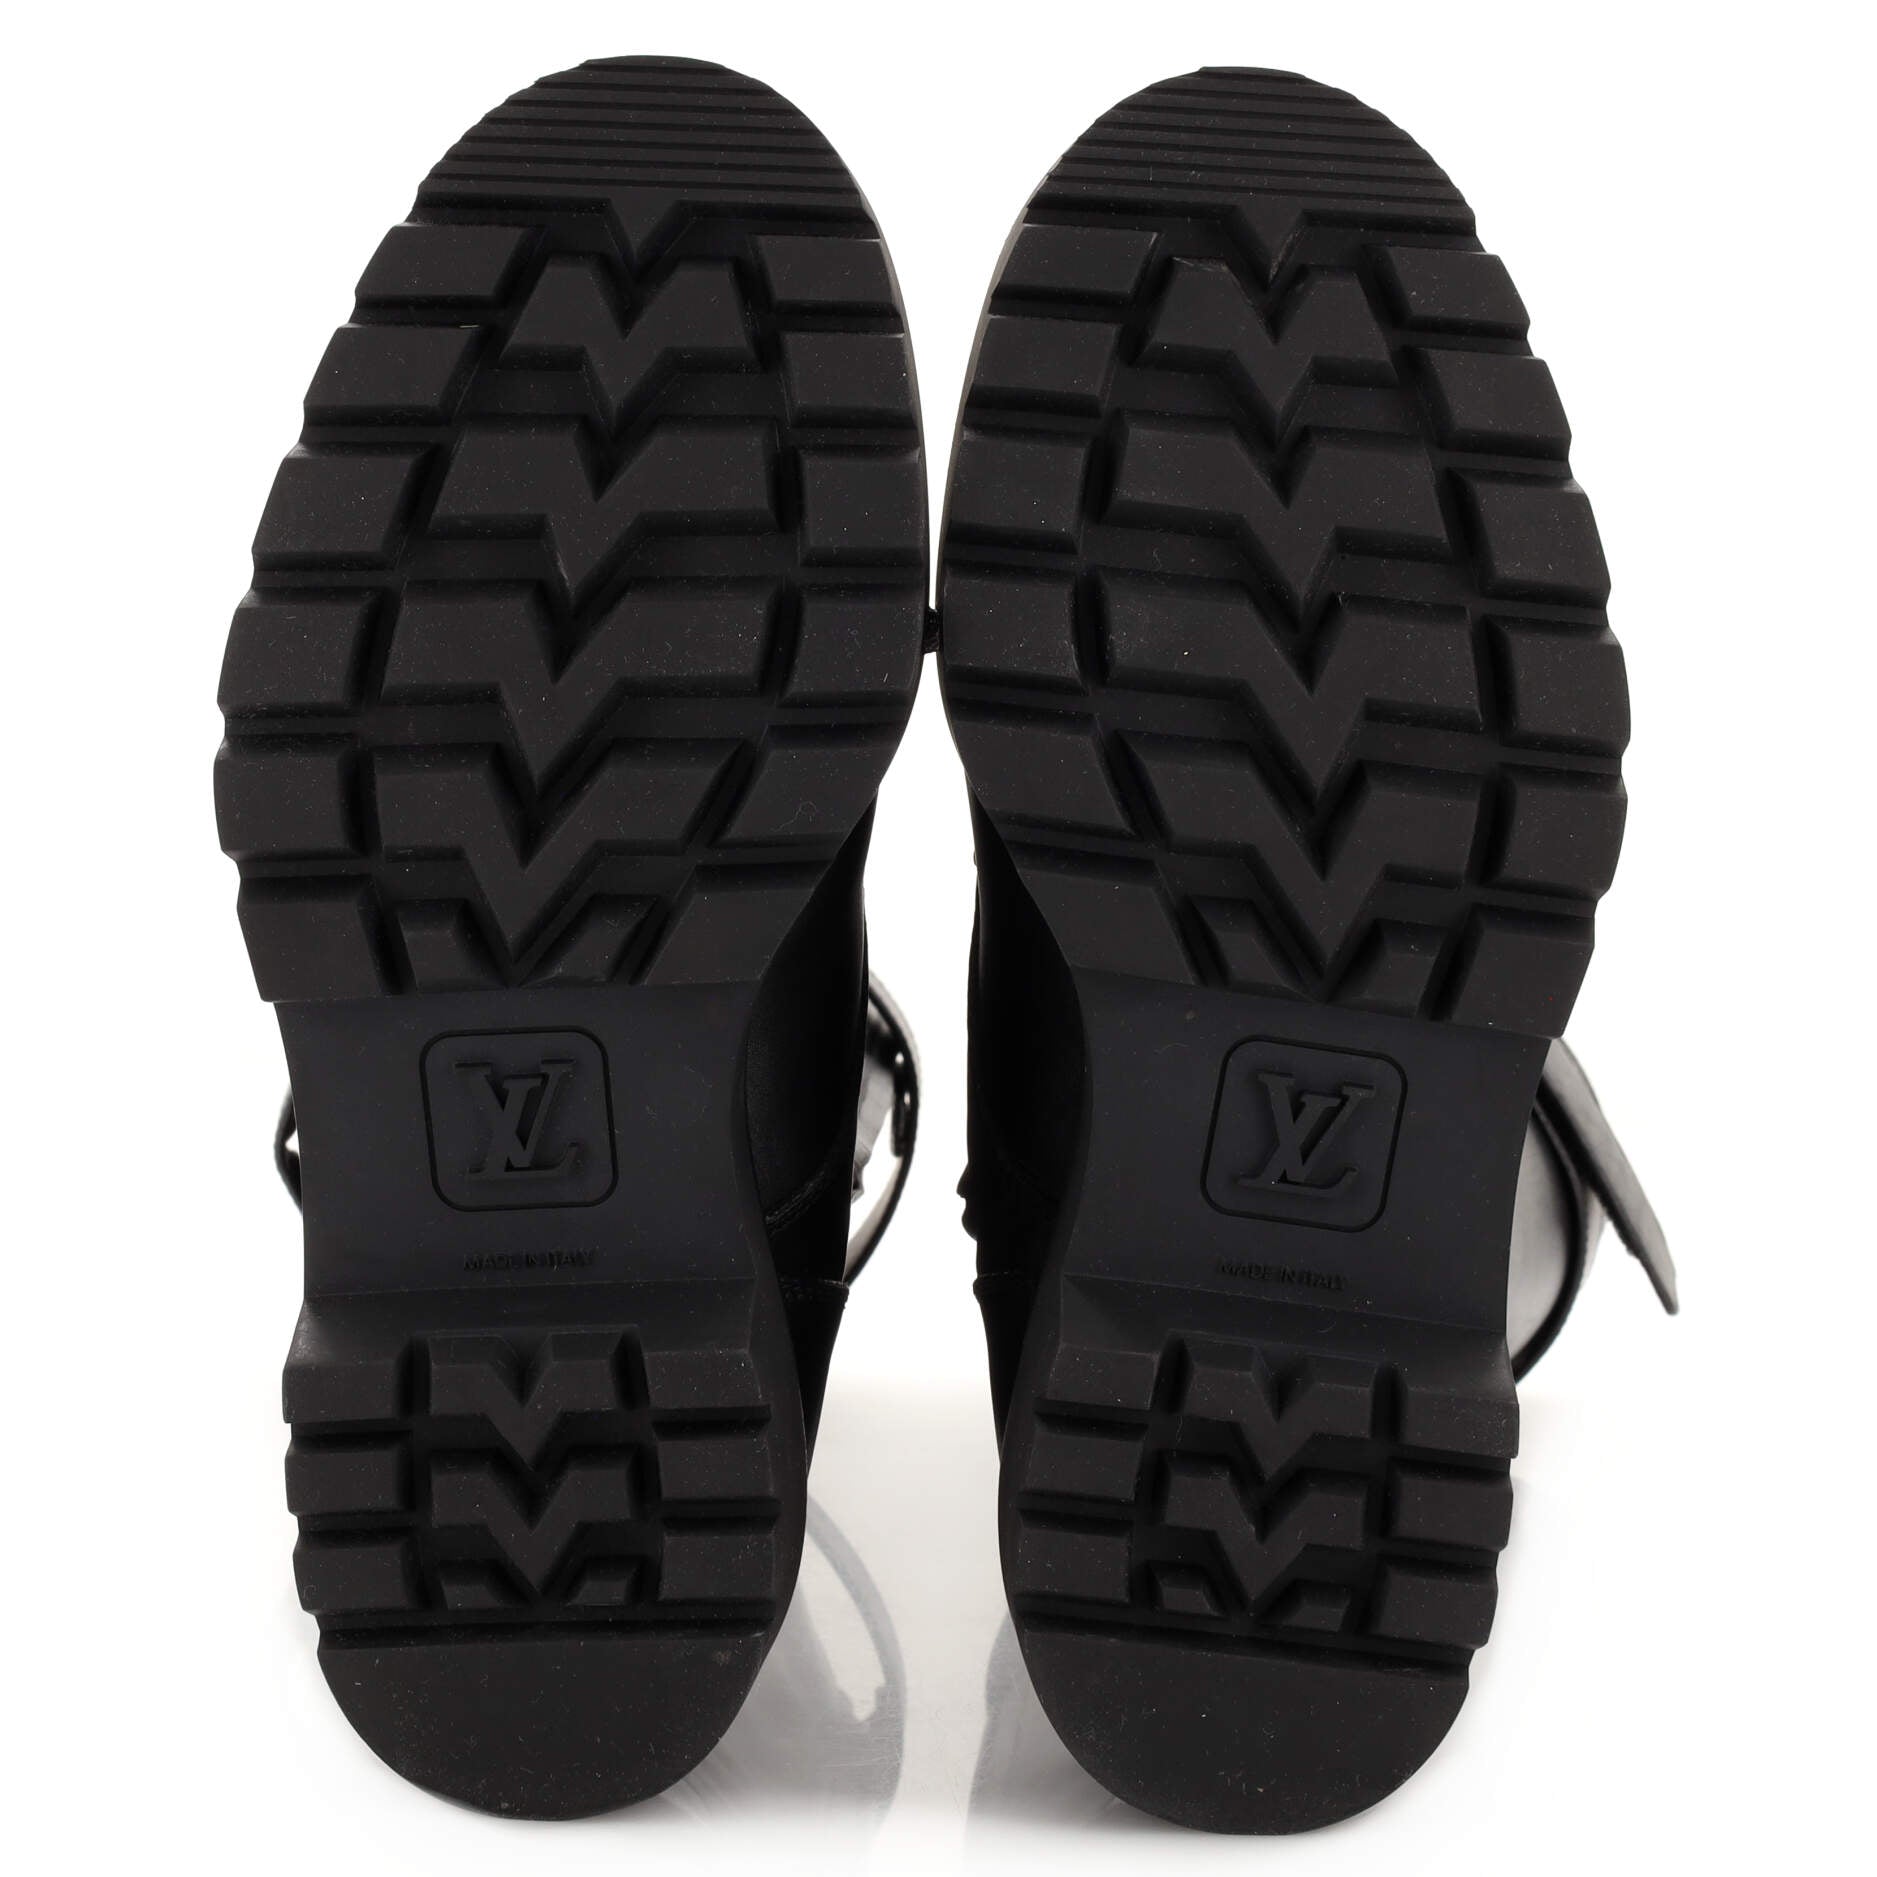 Louis Vuitton, Shoes, Louis Vuitton Rhapsody High Boots 4 Black